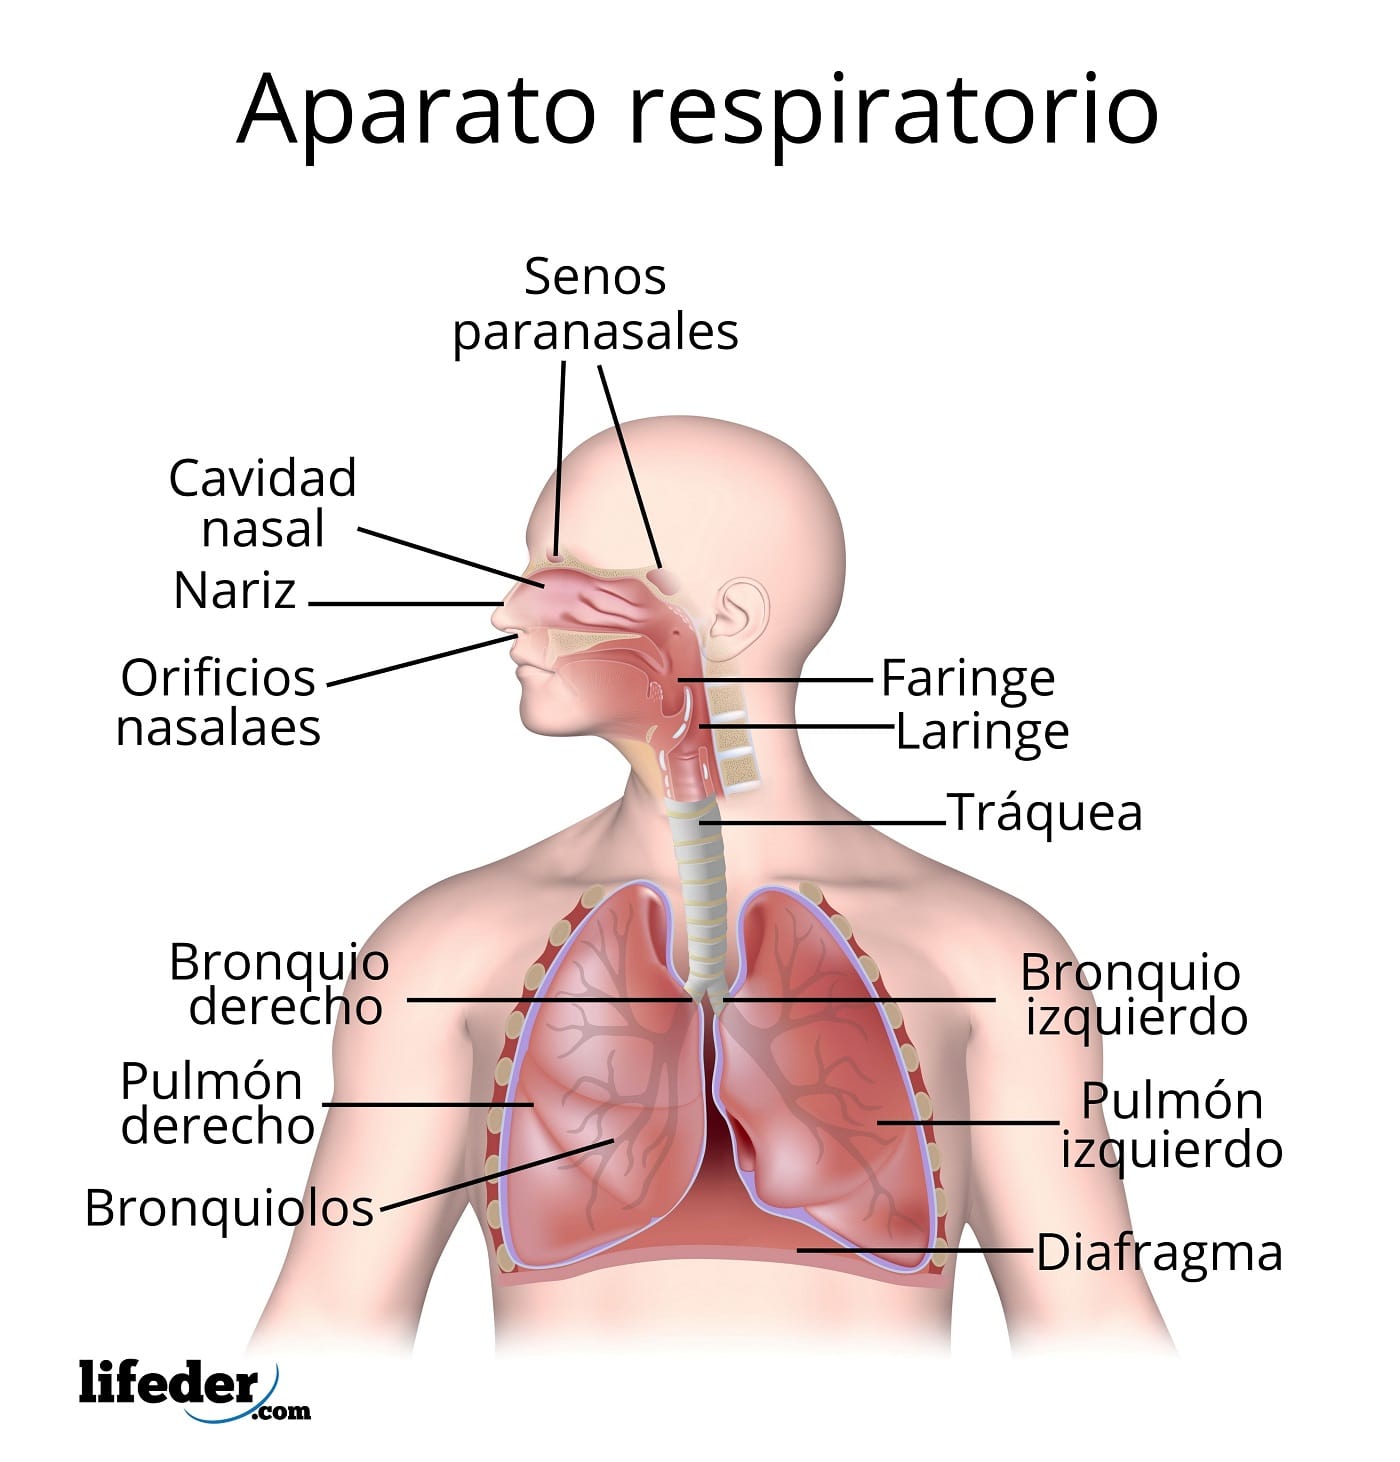 aparato respiratorio completo